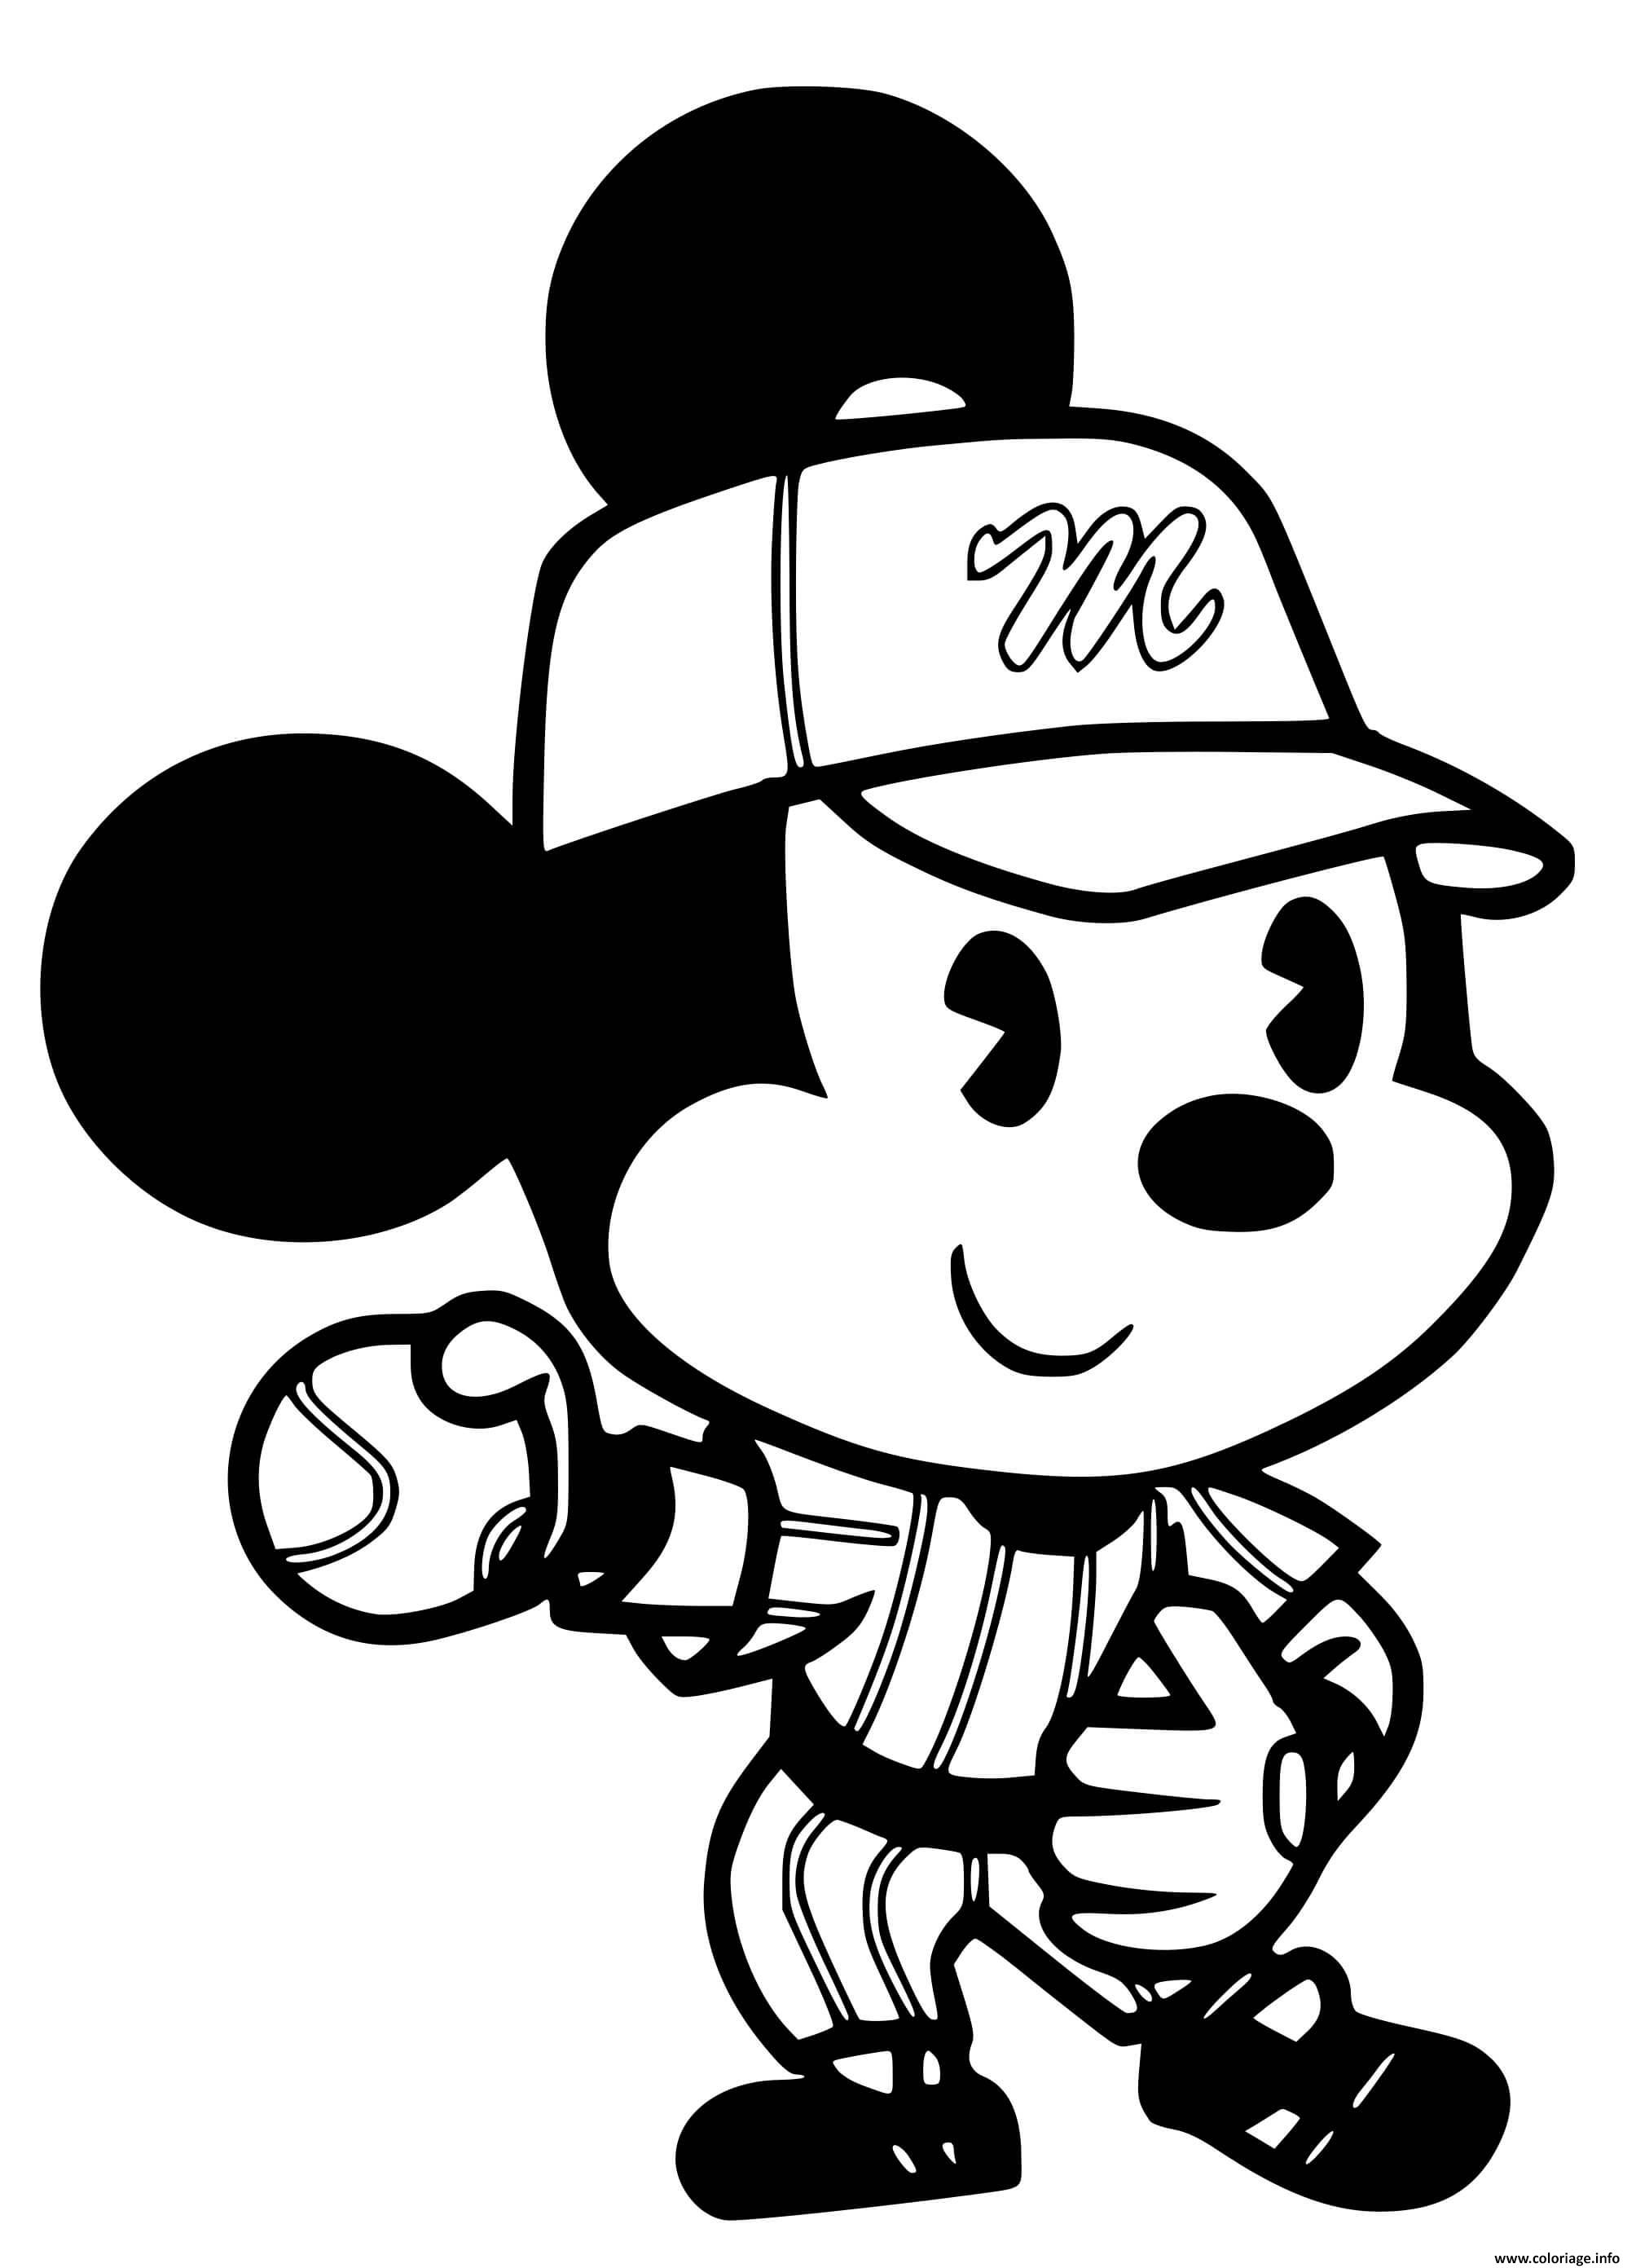 Dessin mickey mouse joue au baseball Coloriage Gratuit à Imprimer